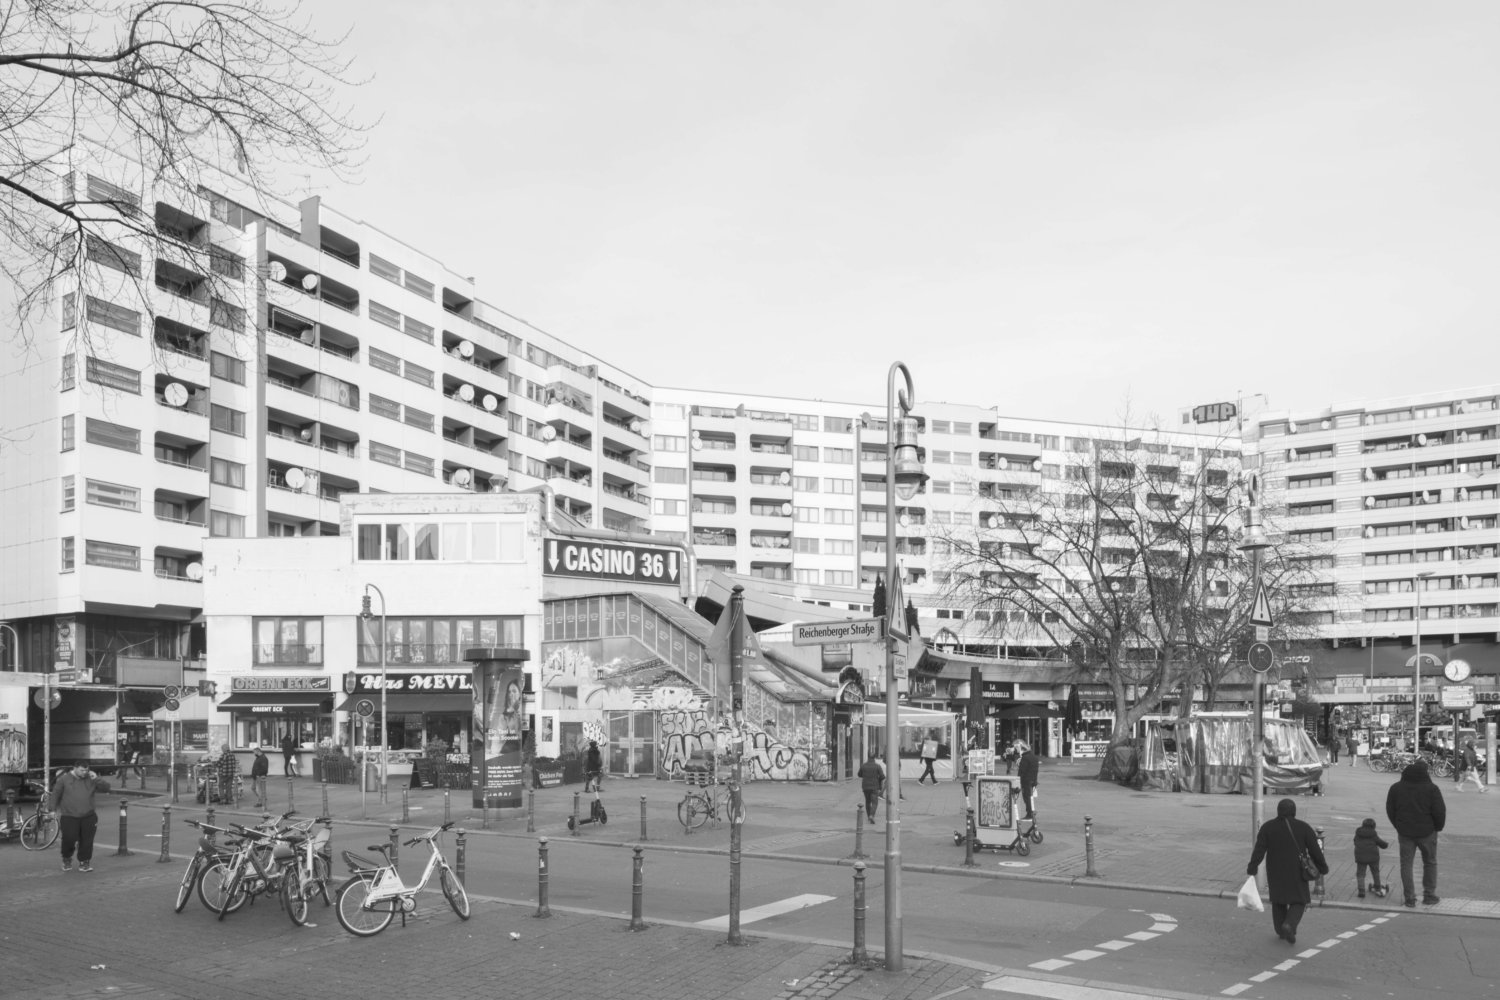 Eine Schwarz-Weiß-Fotografie vom Kottbusser Tor in Berlin, Architekturansicht eines Wohnkomplexes aus den 80er Jahren unmittelbar an der U-Bahn-Station Kottbusser Tor